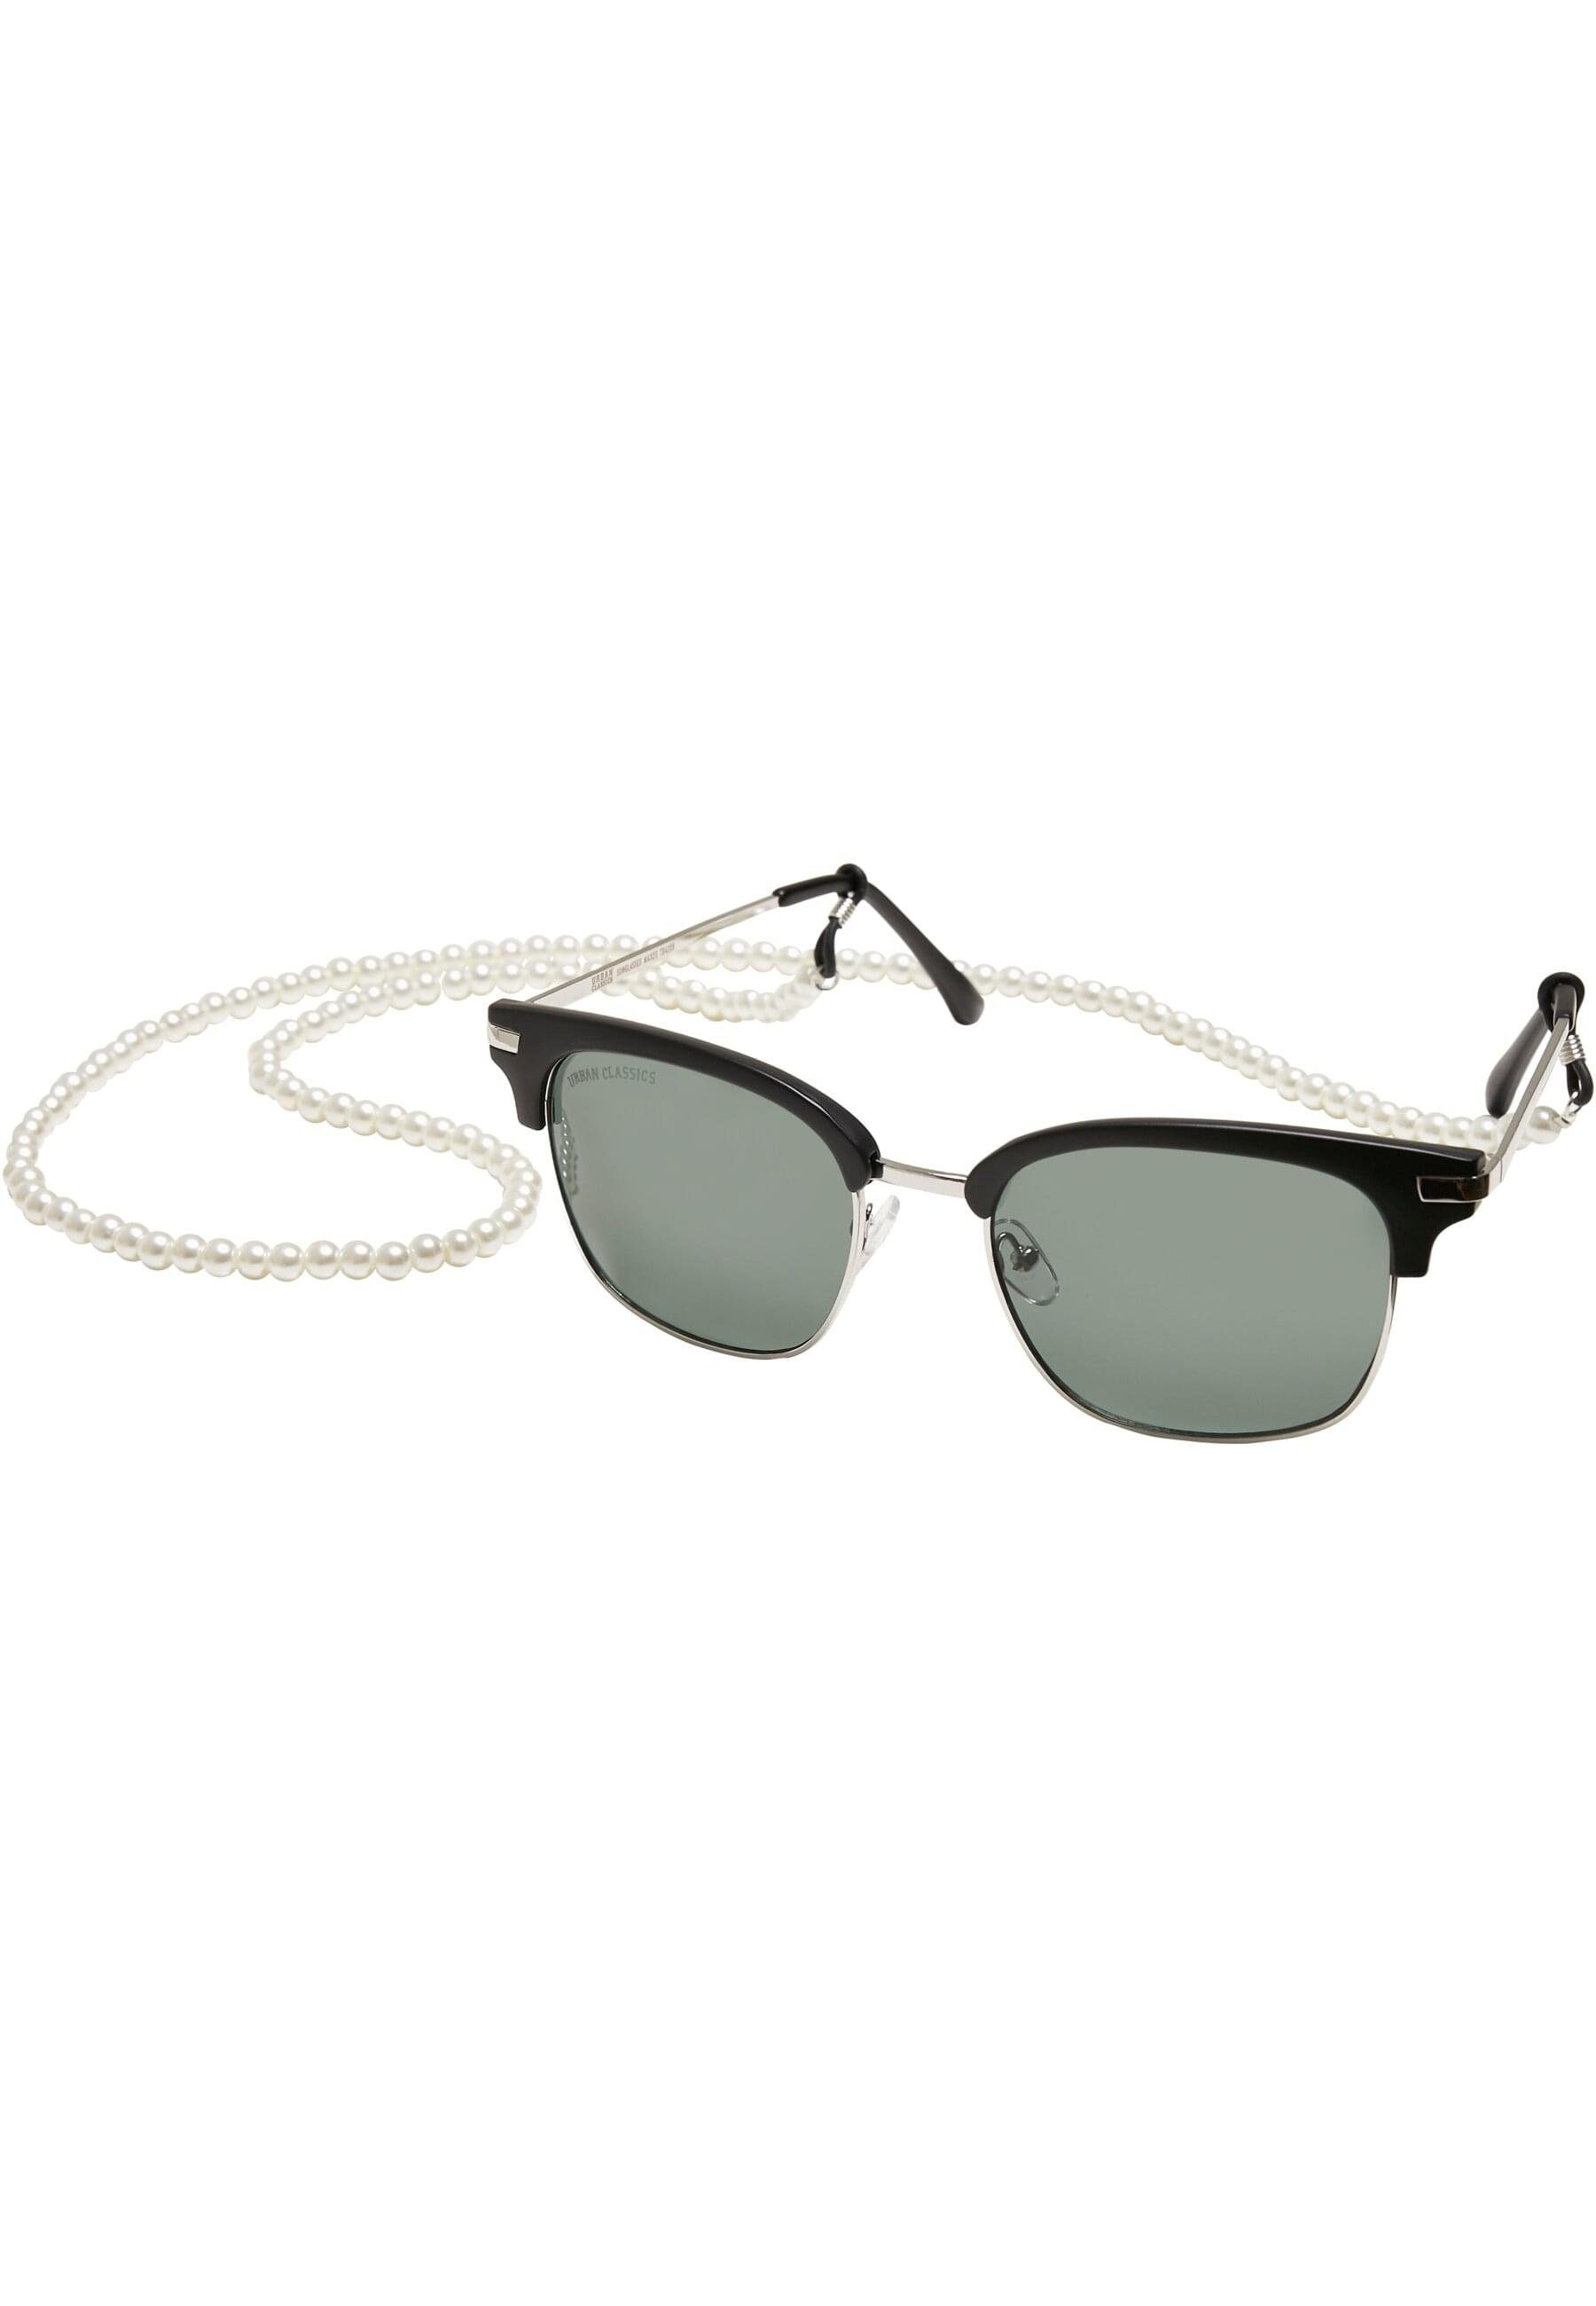 CLASSICS Sonnenbrille With Chain Unisex Sunglasses Crete URBAN